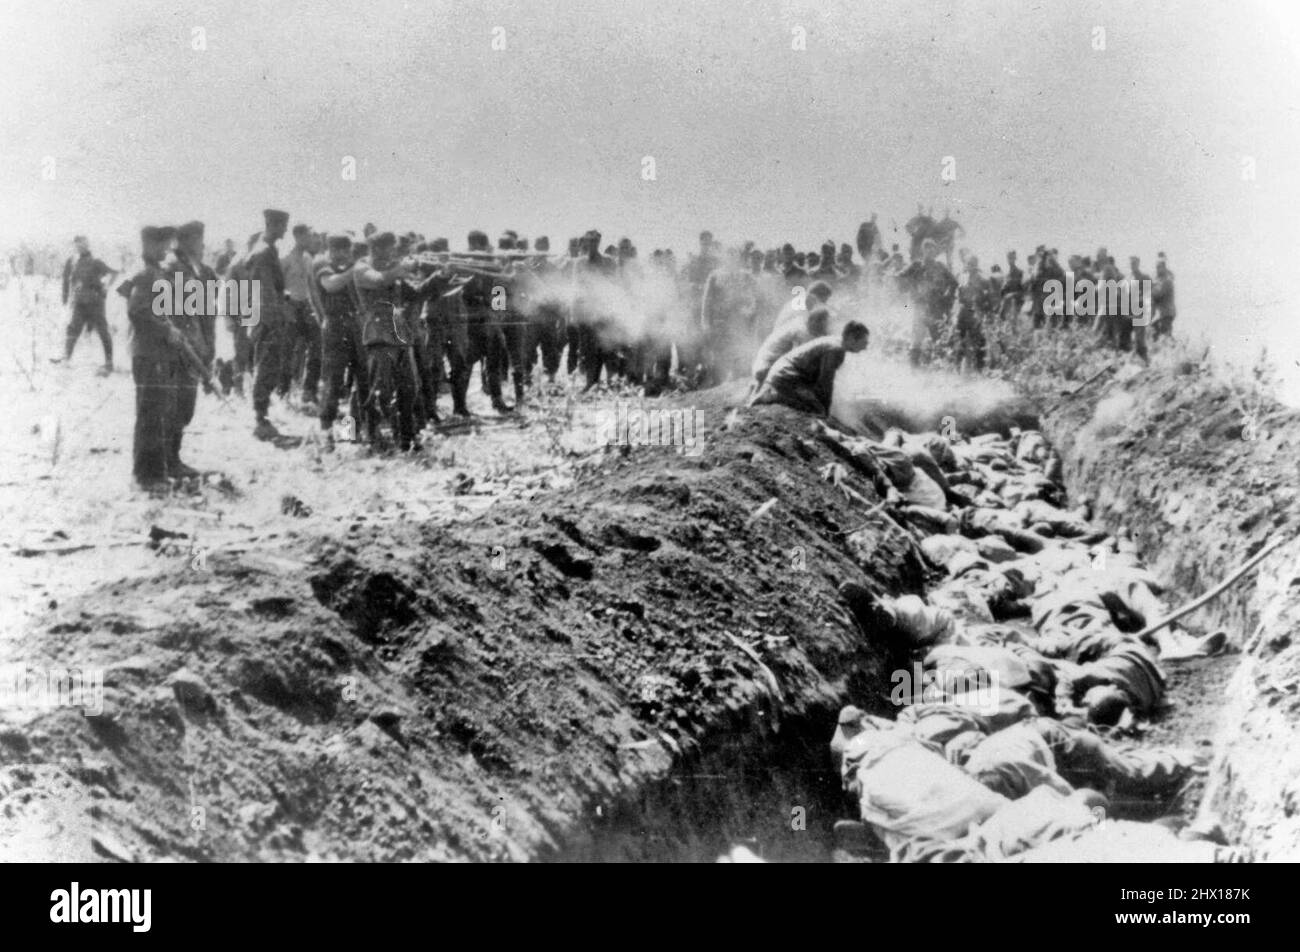 Hombres con una unidad no identificada ejecutan a un grupo de civiles soviéticos arrodillados al lado de una fosa común durante la Segunda Guerra Mundial Foto de stock